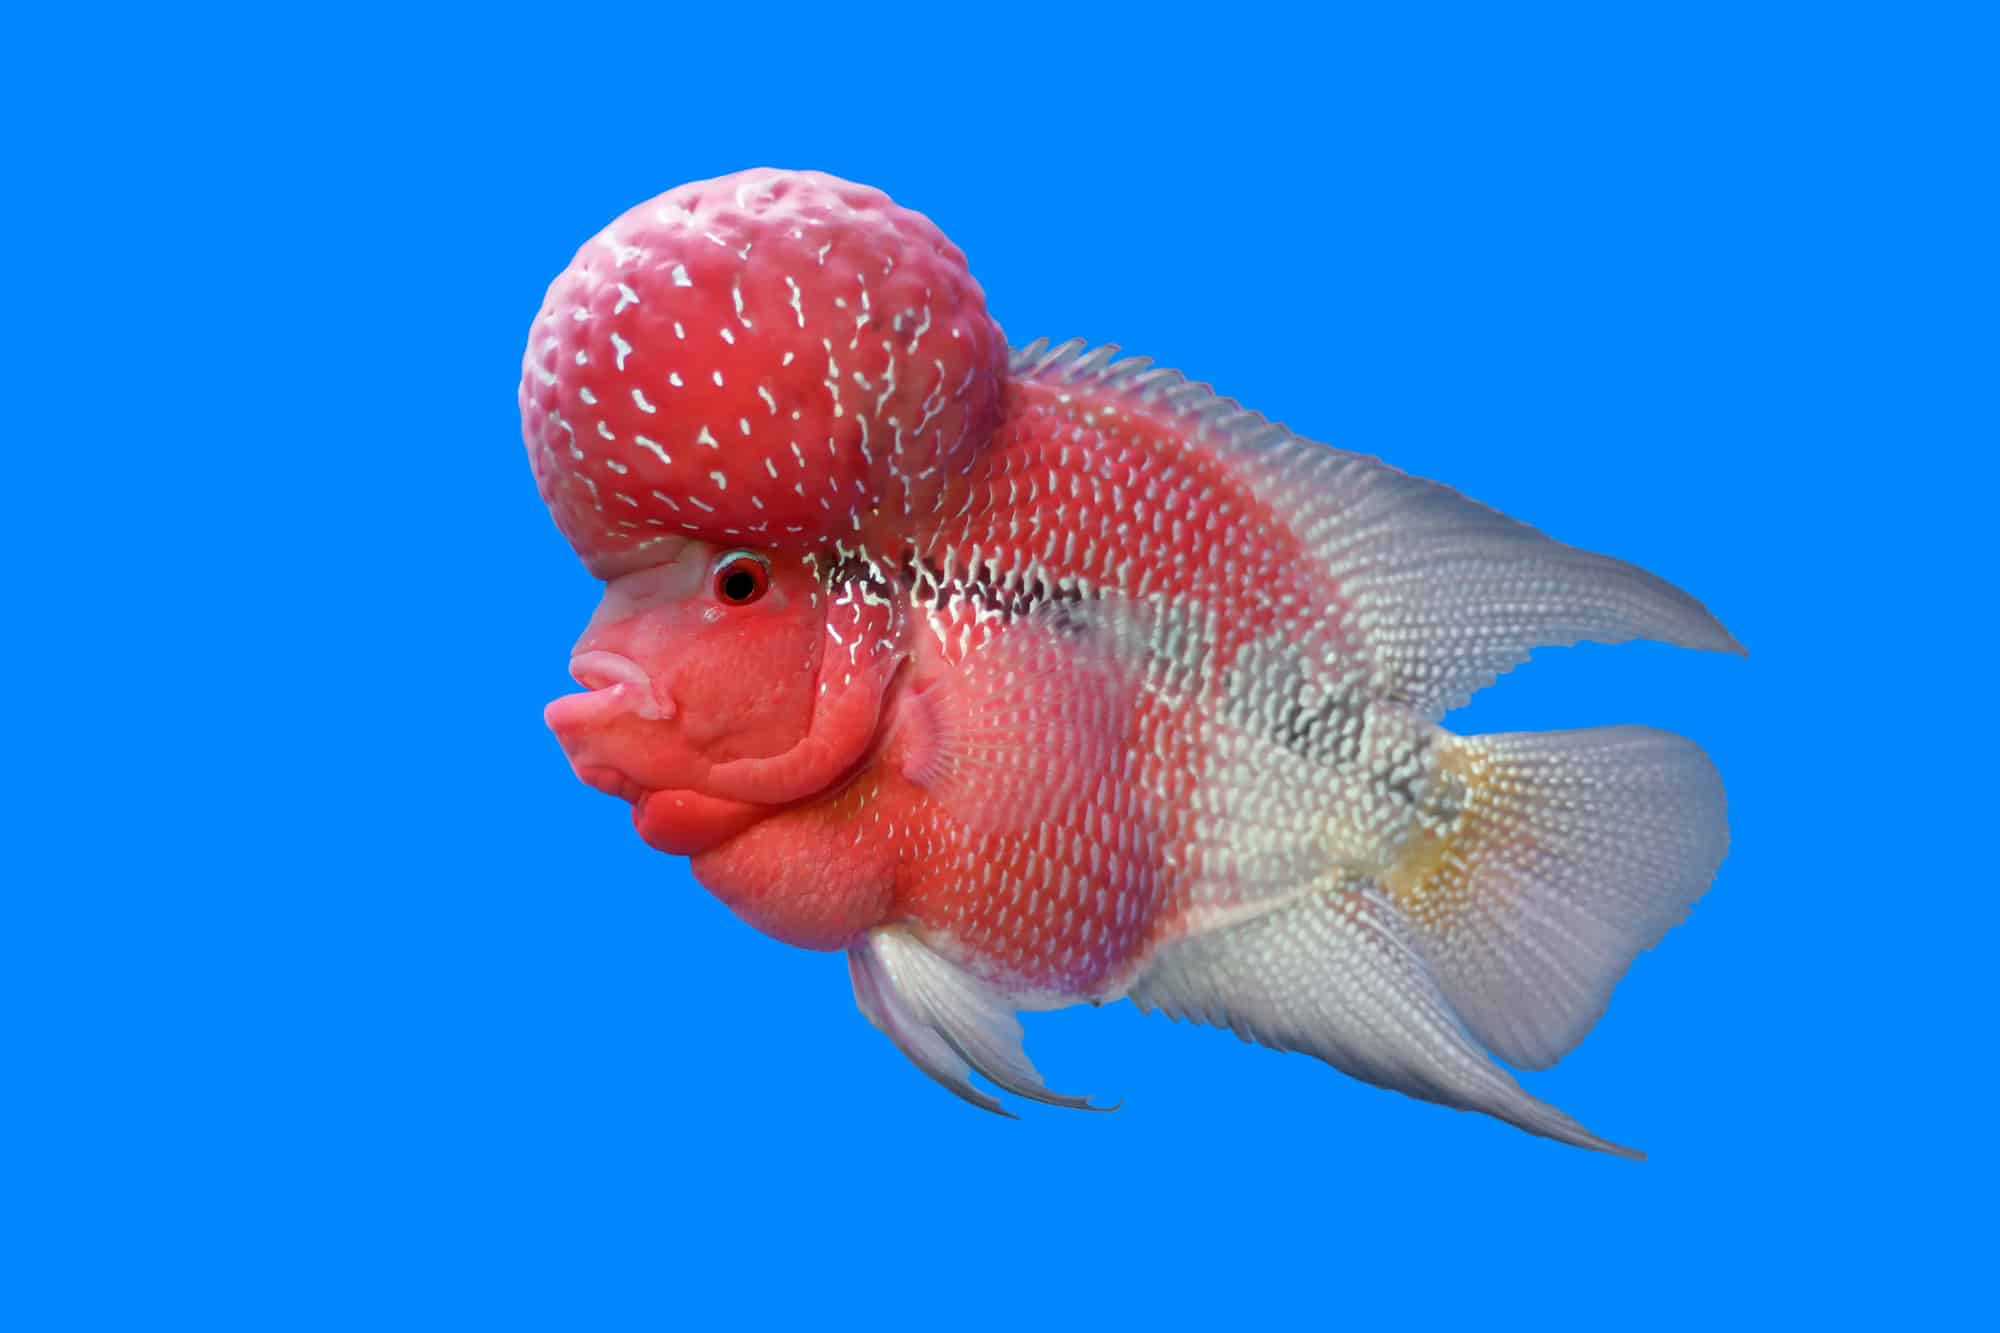 flowerhorn cichlid or cichlasoma fish in the aquarium